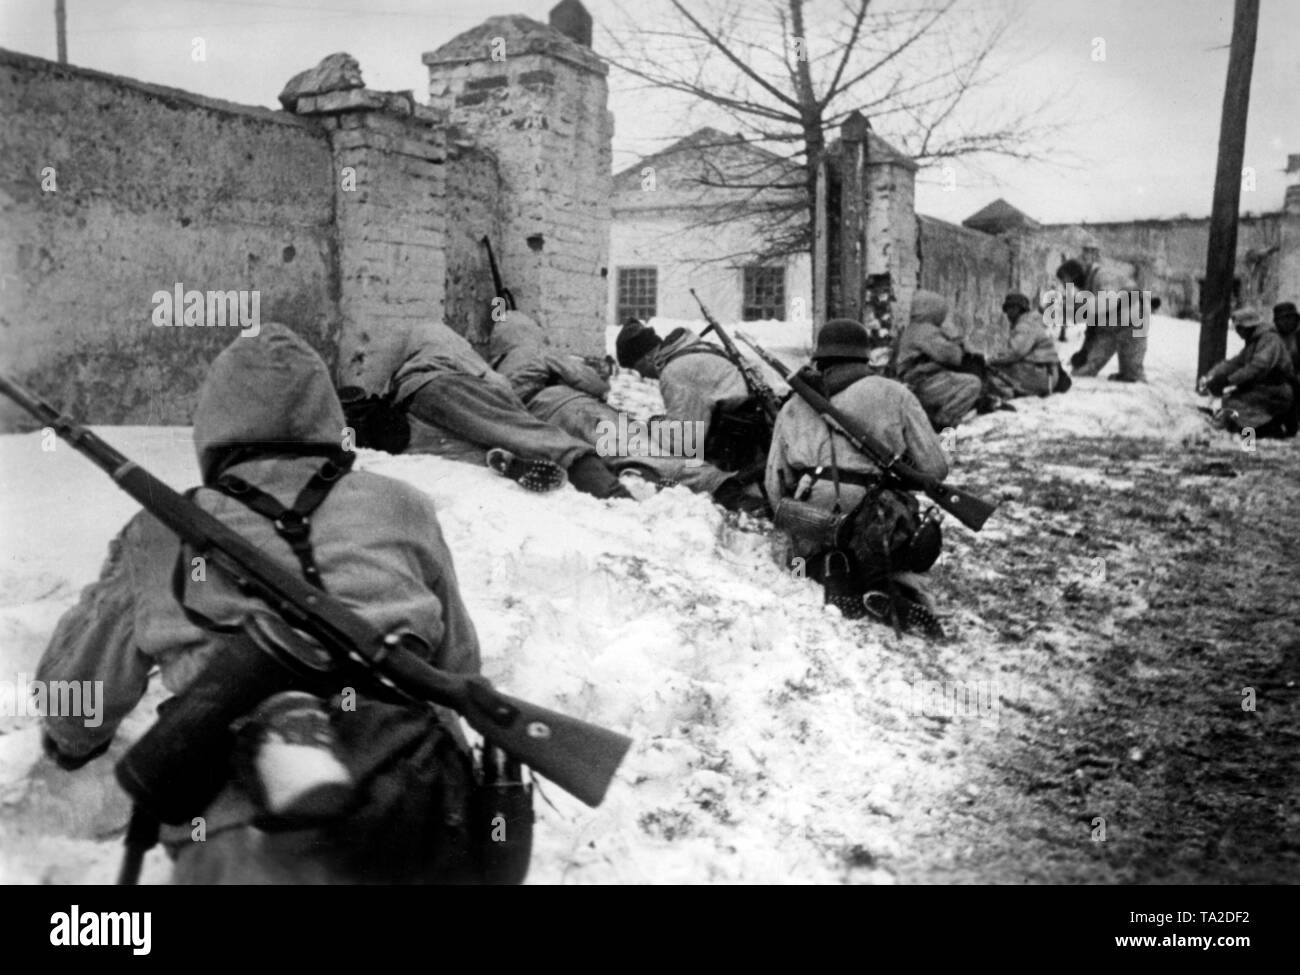 Bei einem Gegenangriff der Wehrmacht, deutsche Soldaten haben Mittags am Stadtrand von Dmitrijew-Lgowski, südwestlich von orjol. Neben dem Gewehre (Mauser 98), einige der Soldaten haben auch Gasmasken am Gürtel. Foto der Propaganda Firma (PK): kriegsberichterstatter Henisch. Stockfoto